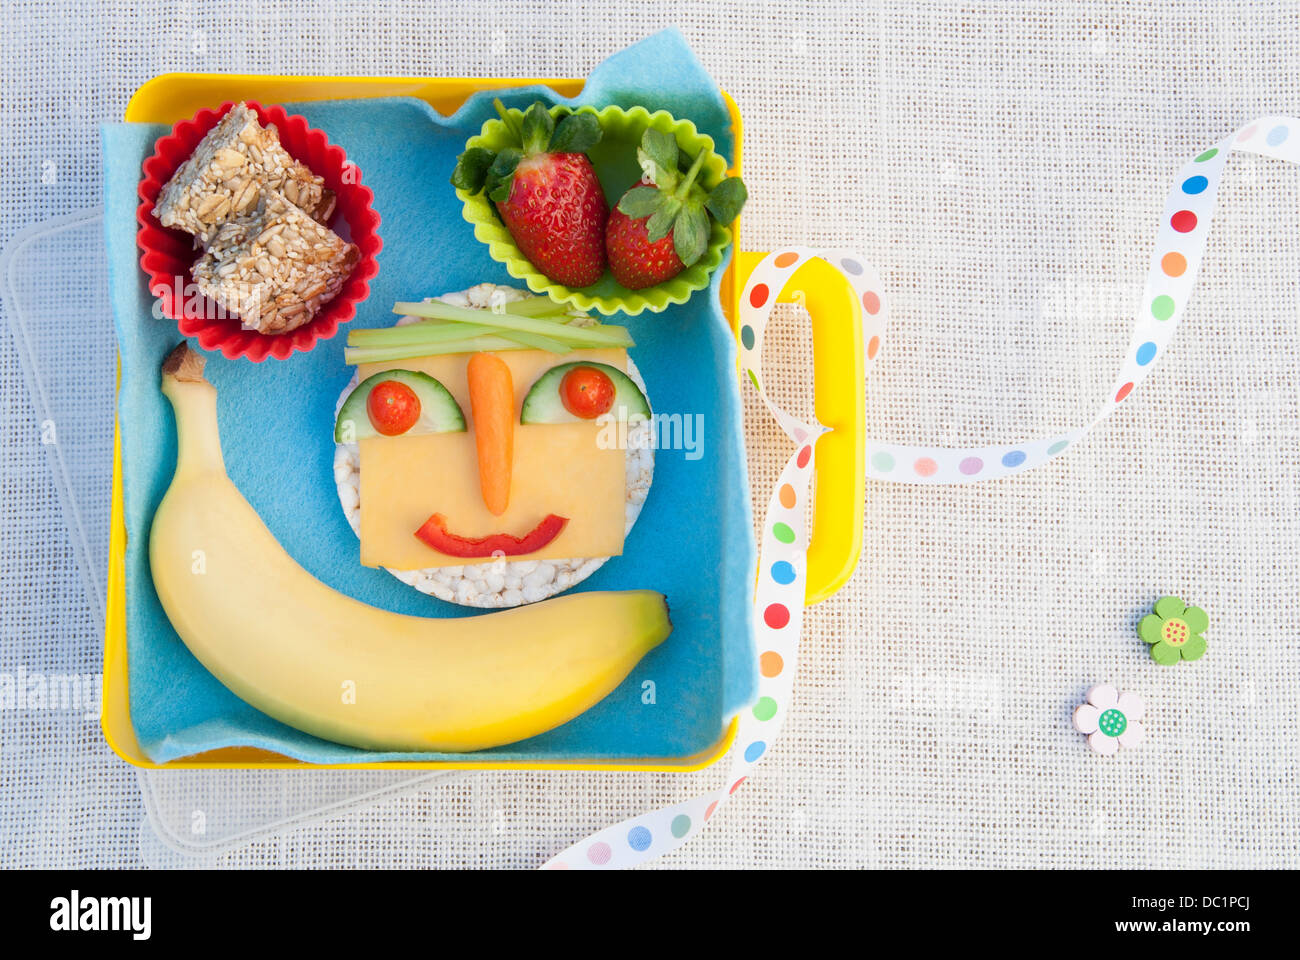 Gesunde Ernährung Produkte in Smiley-Gesicht Stockfoto